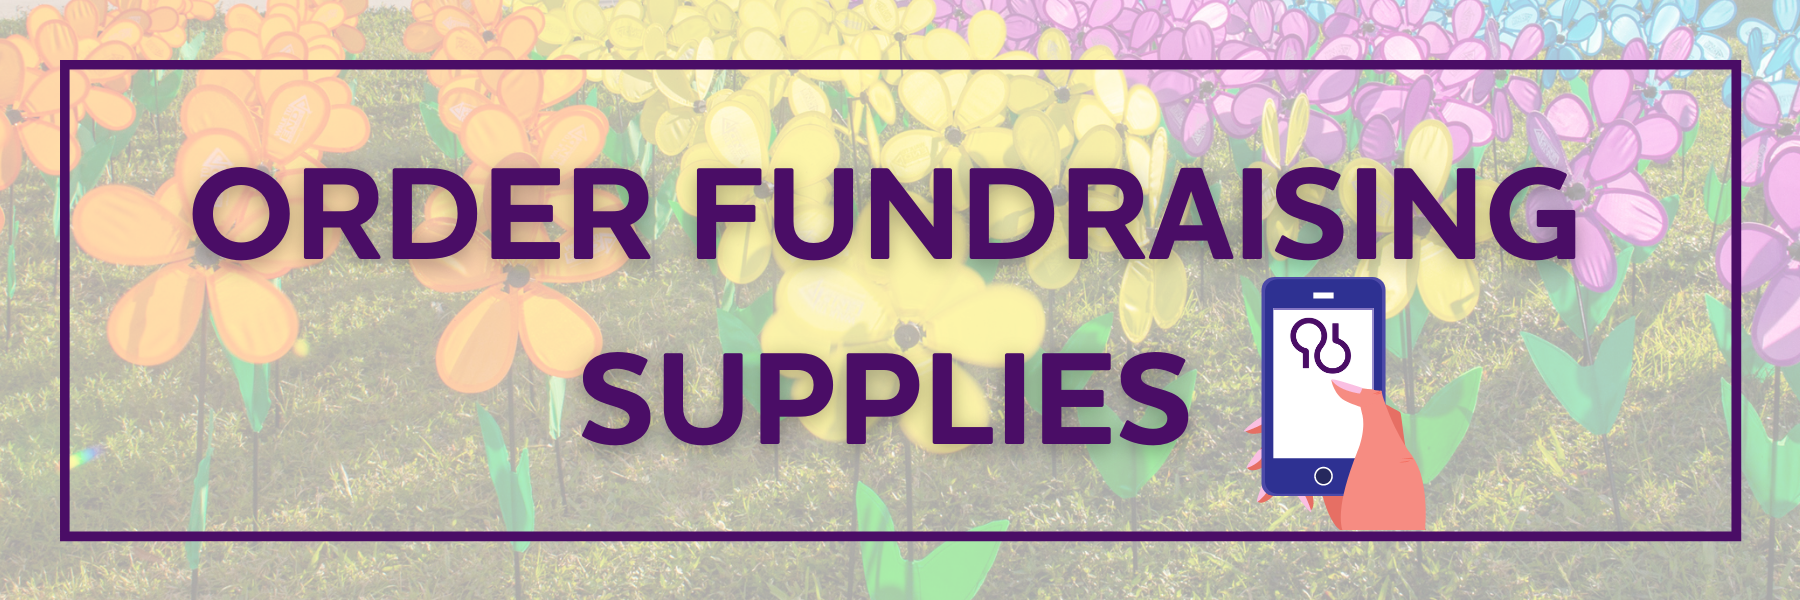 Order Fundraising Supplies SEFL